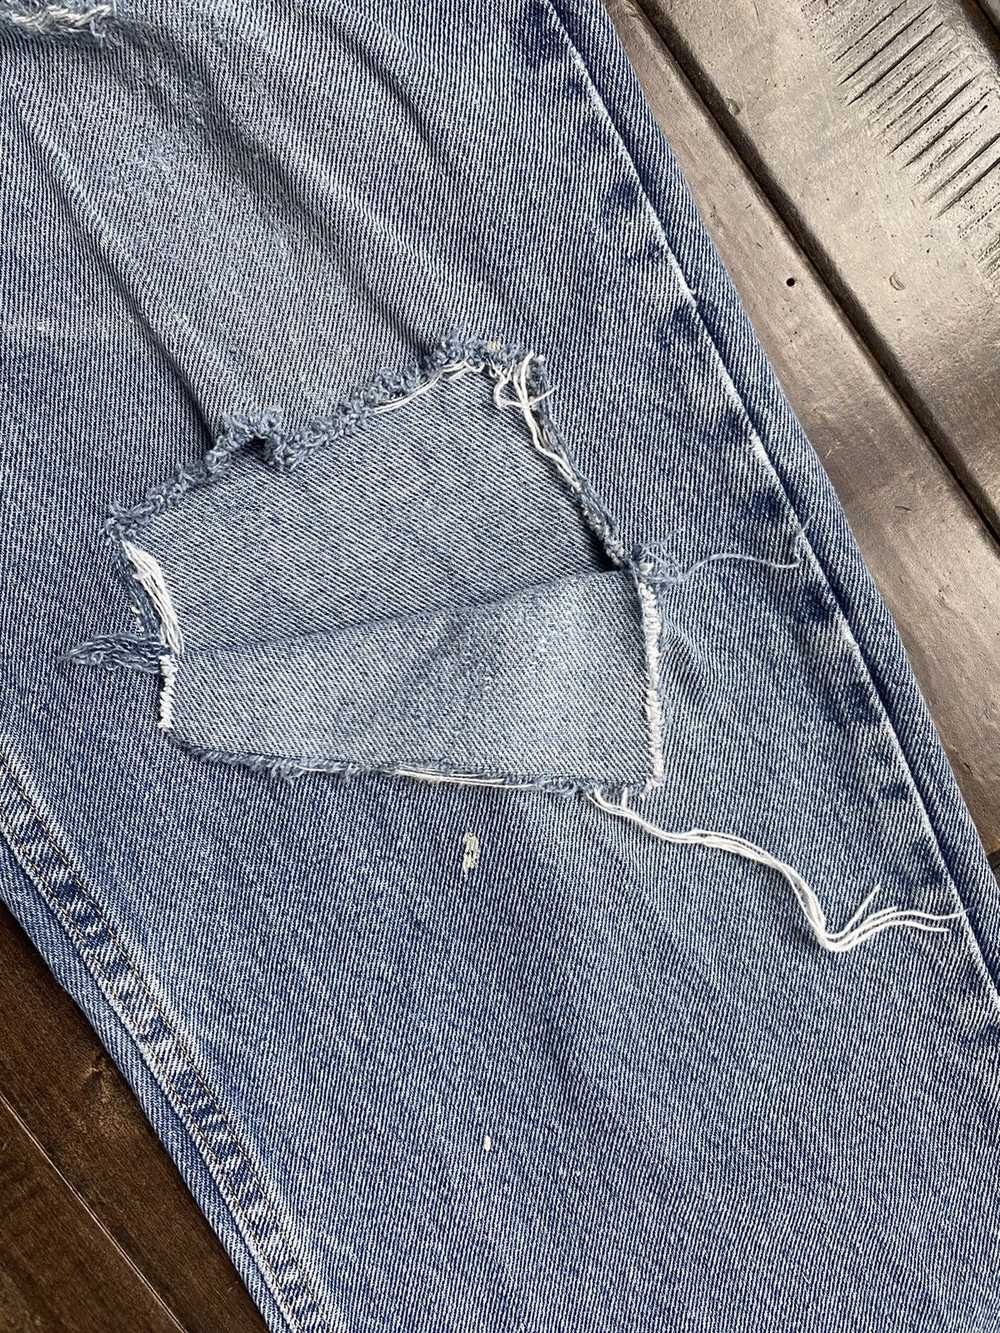 Wrangler vintage distressed wrangler jeans - image 3